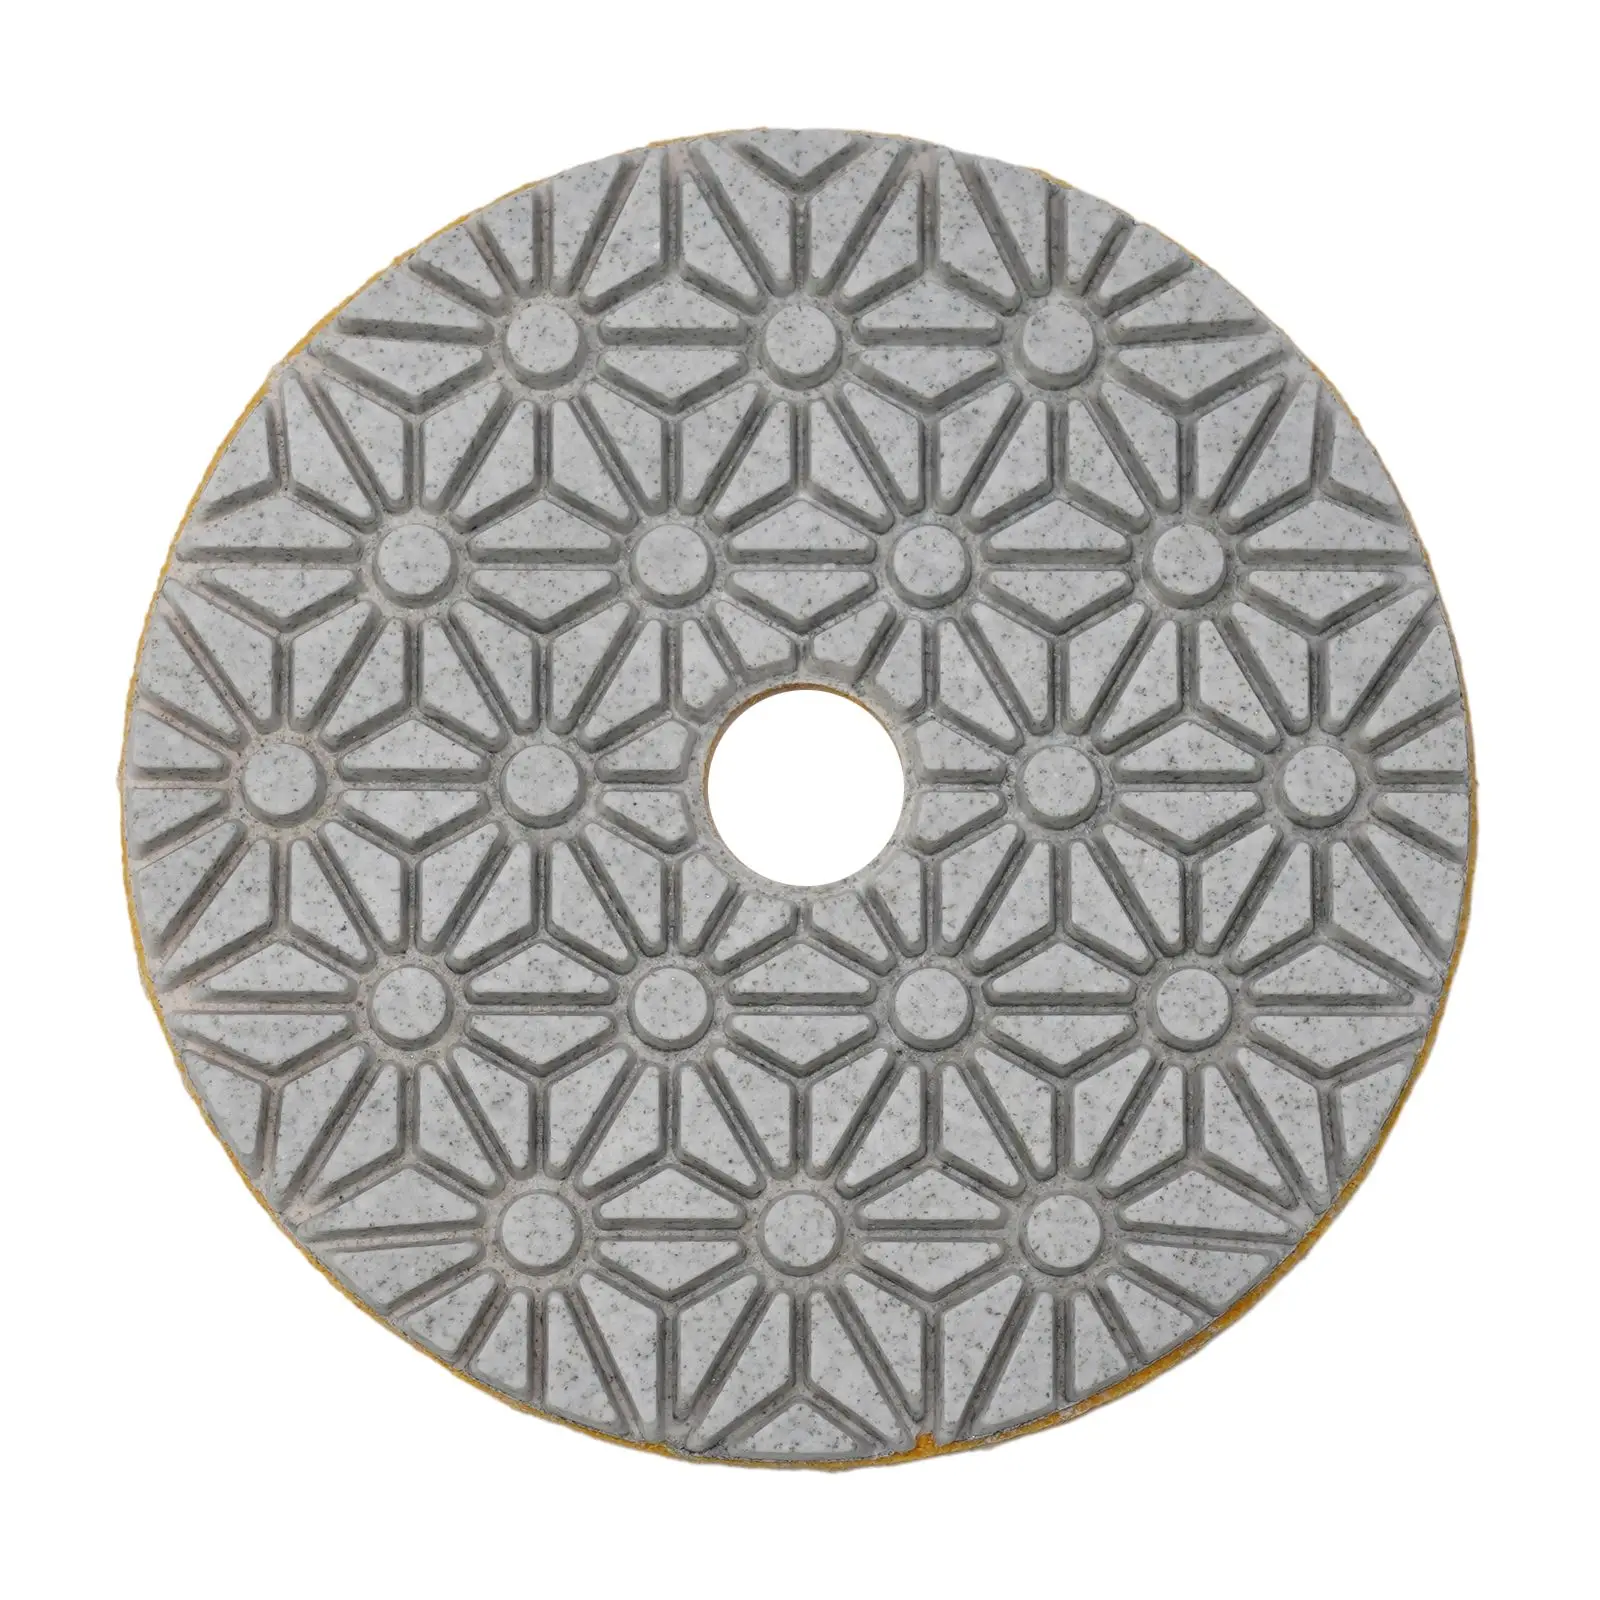 

Алмазный полировальный диск 100 мм, 4 дюйма, влажный/сухой шлифовальный диск, абразивный инструмент для шлифовки мрамора, гранита, бетона, столешницы, камень